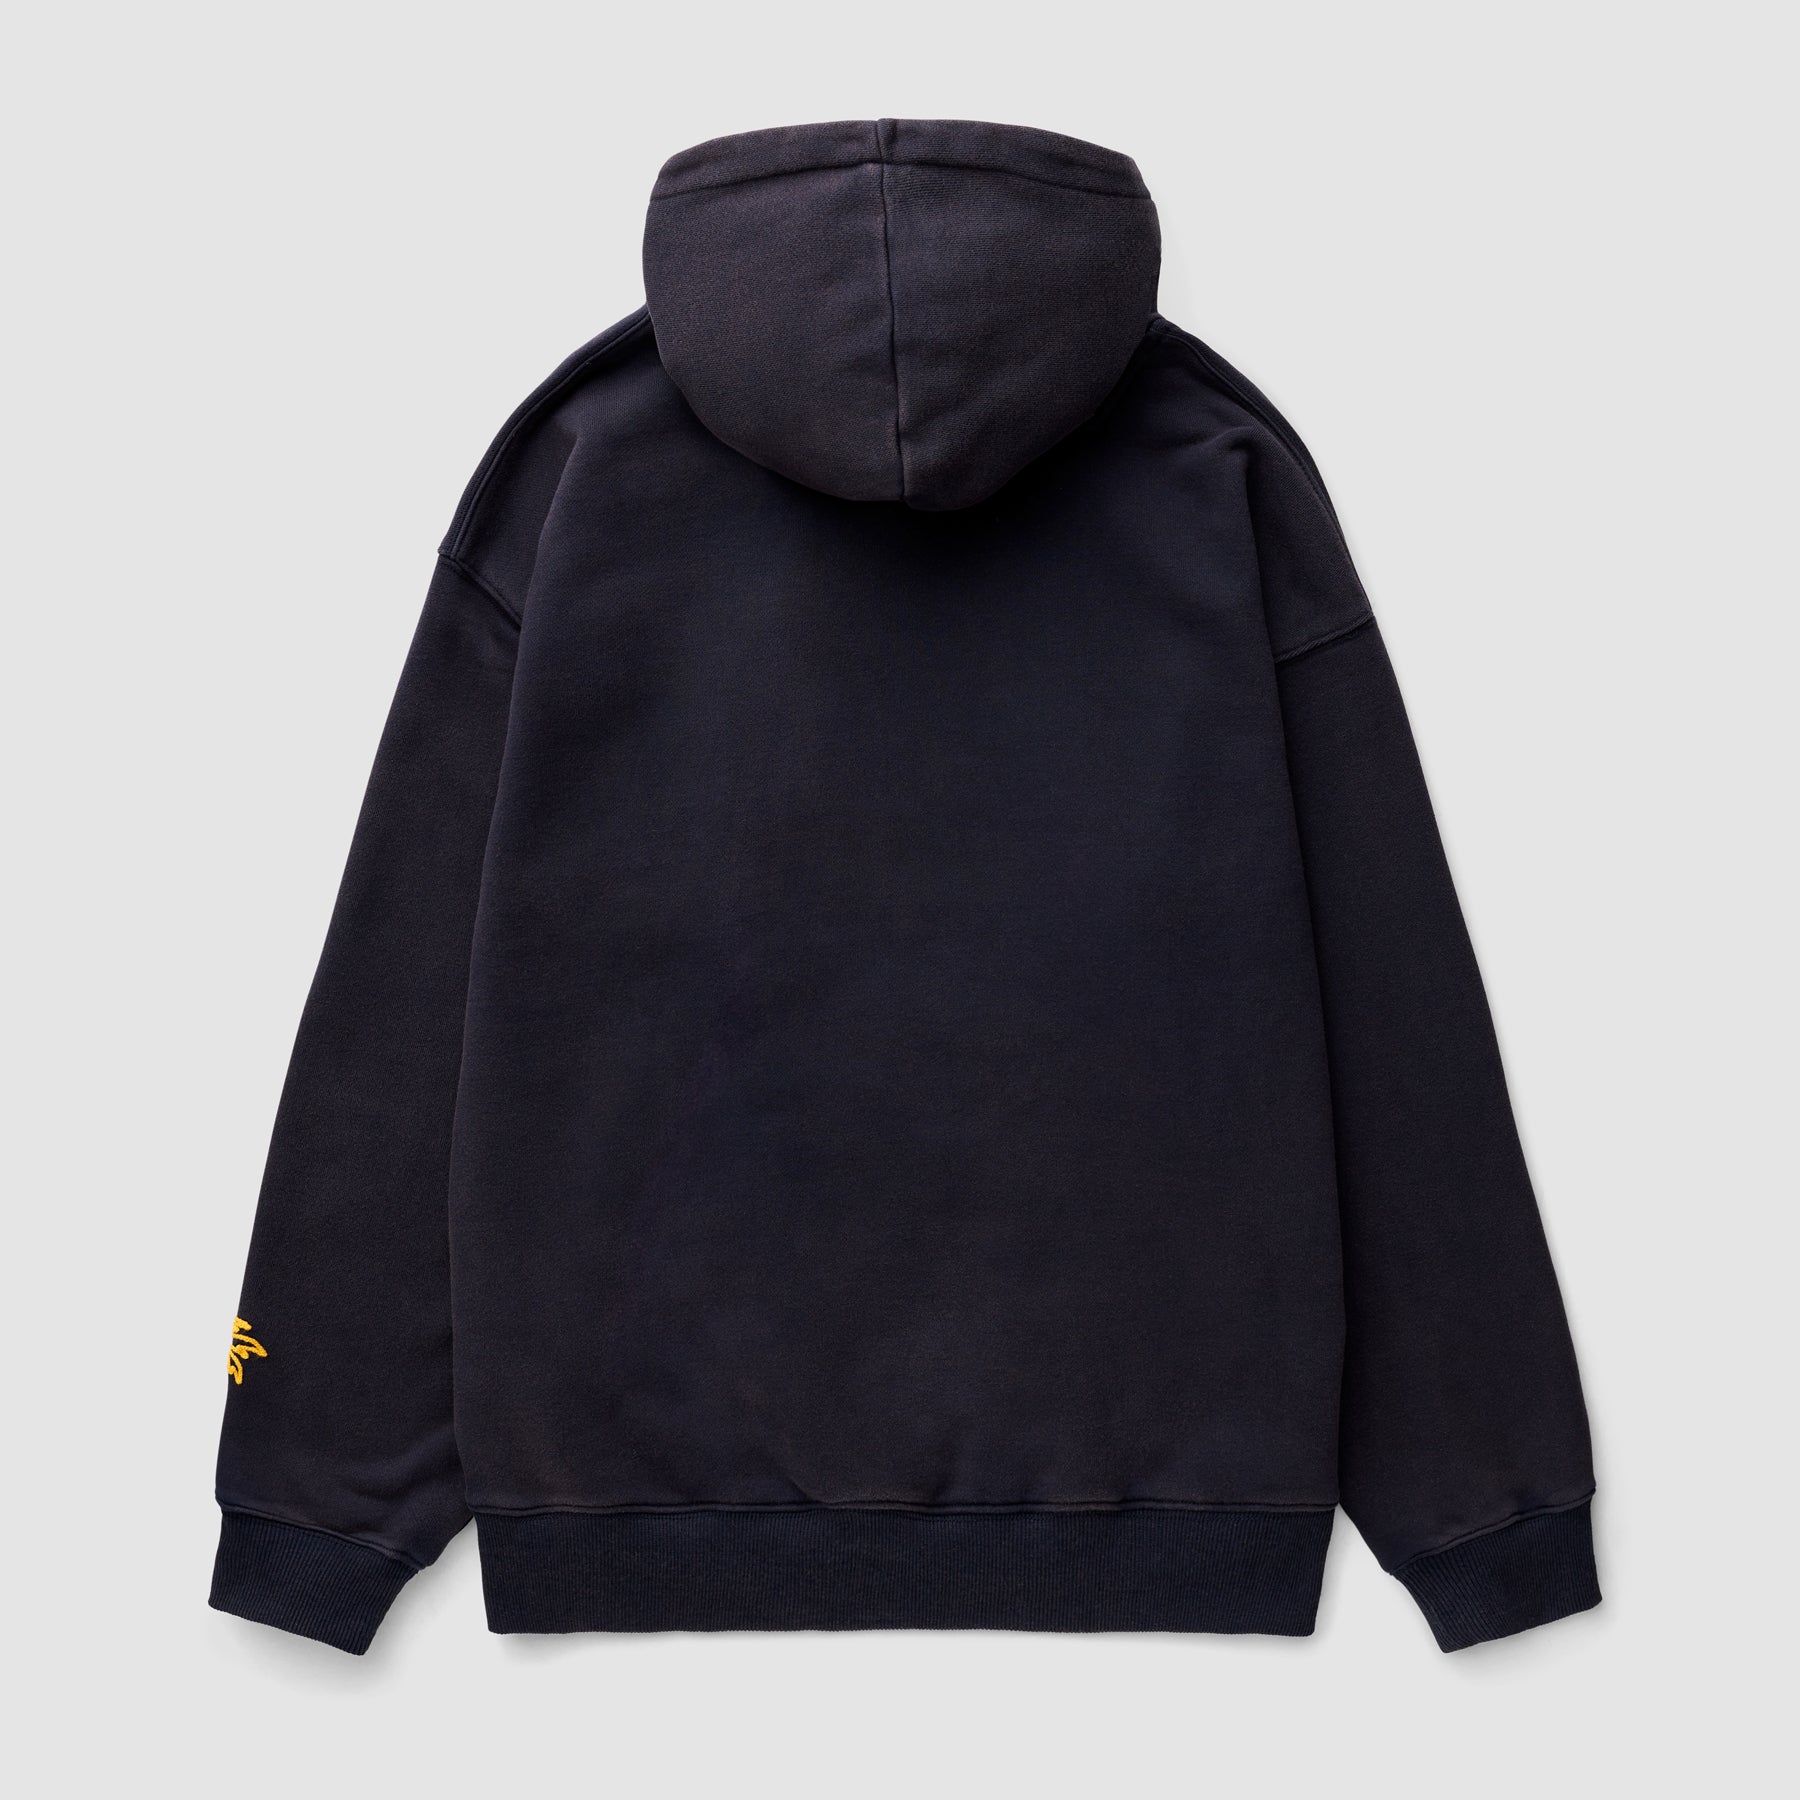 Chainstitch Hooded Sweatshirt (Navy)